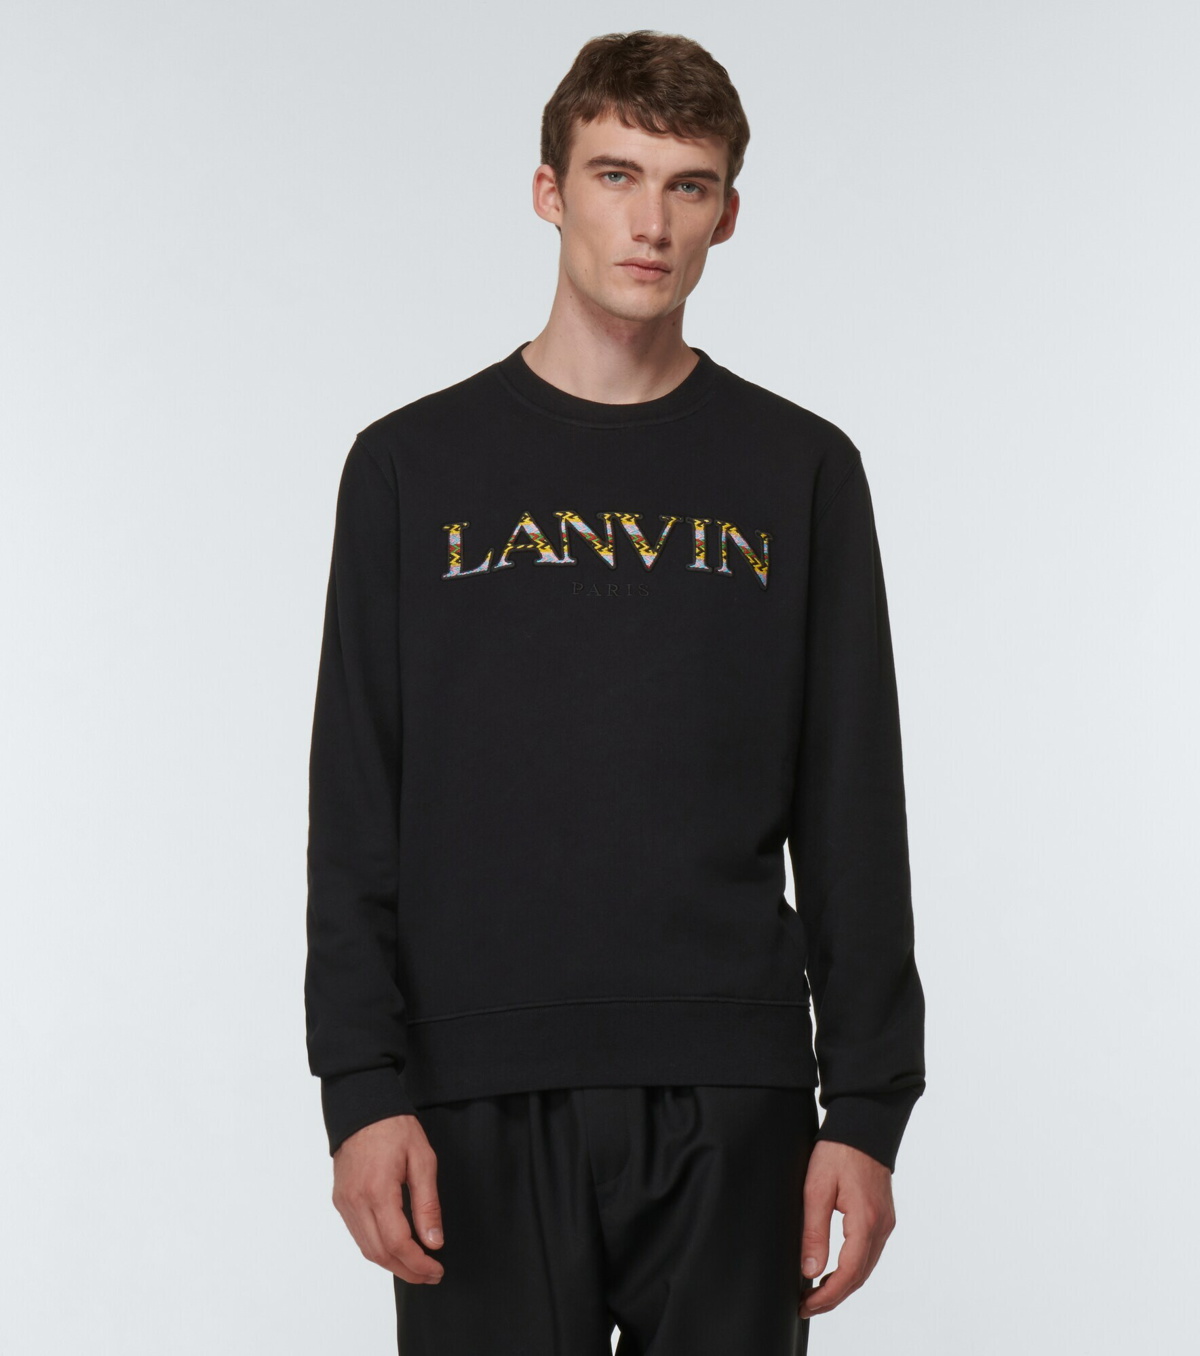 Lanvin - Embroidered cotton sweatshirt Lanvin